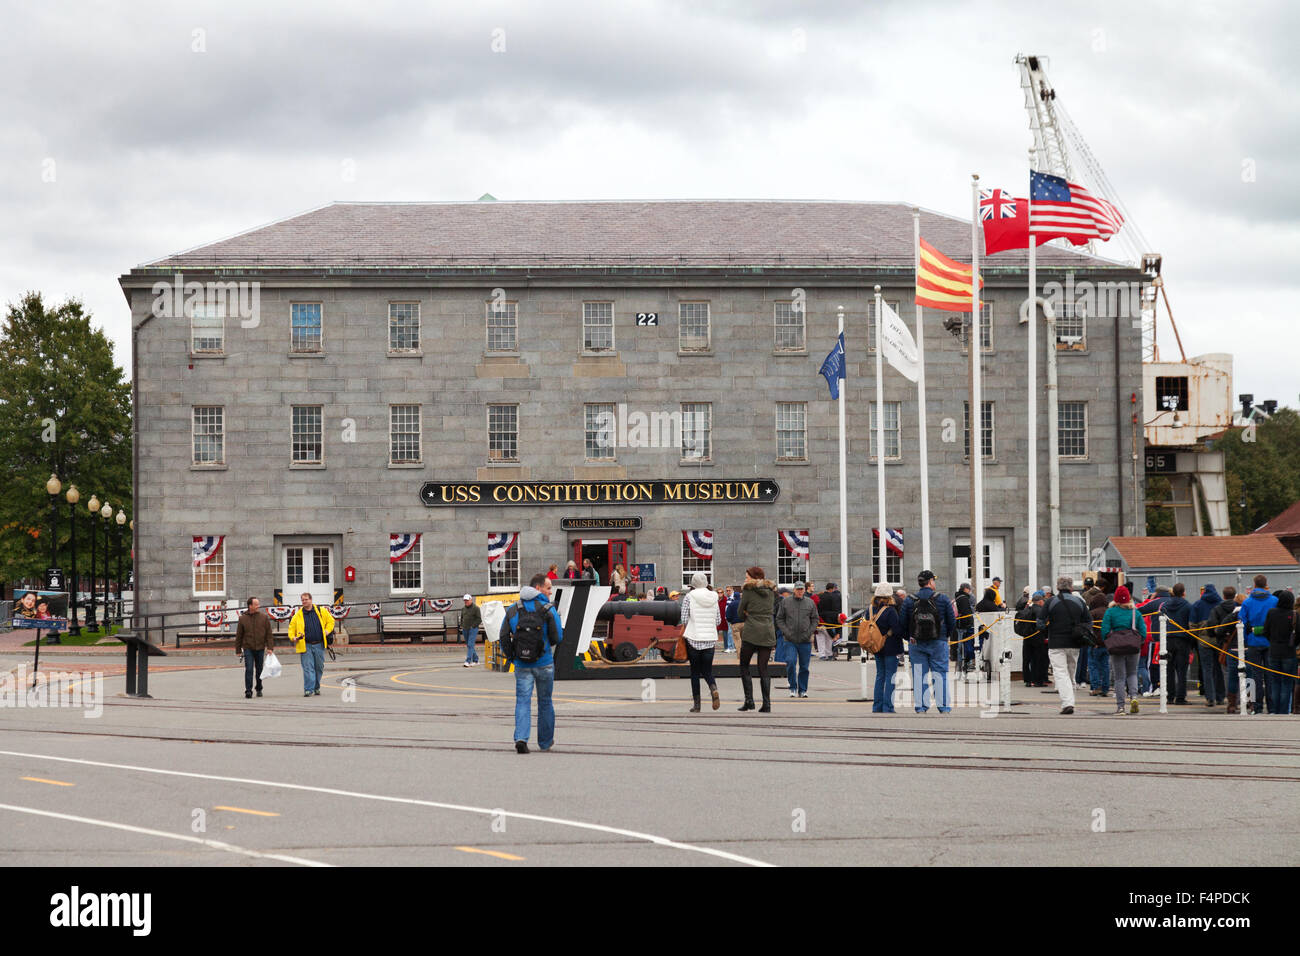 La USS Constitution Museum building, sul sentiero della libertà, Boston, Massachusetts, STATI UNITI D'AMERICA Foto Stock